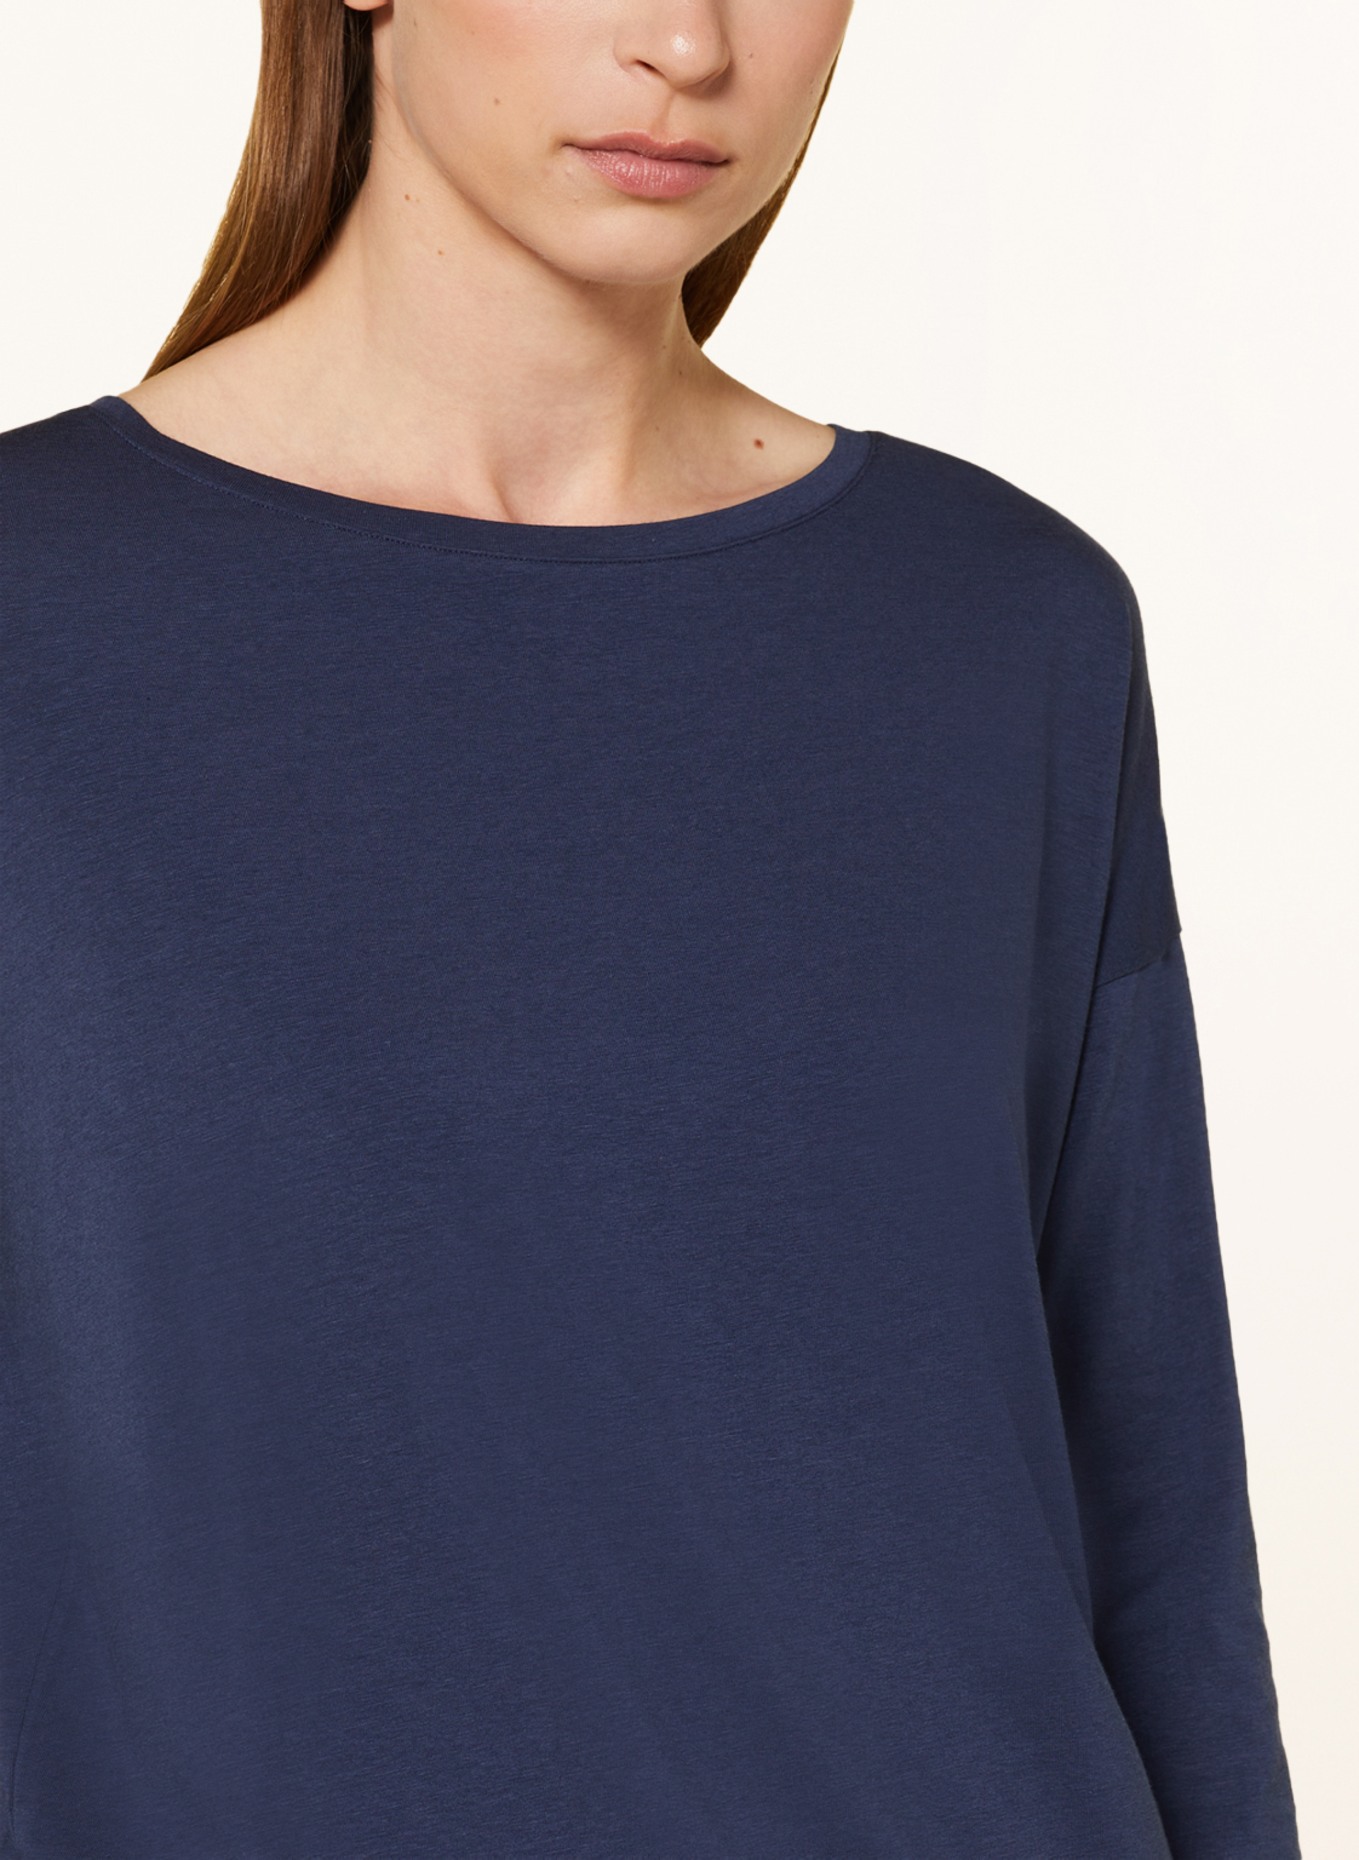 mey Pajama shirt series TESSIE, Color: DARK BLUE (Image 4)